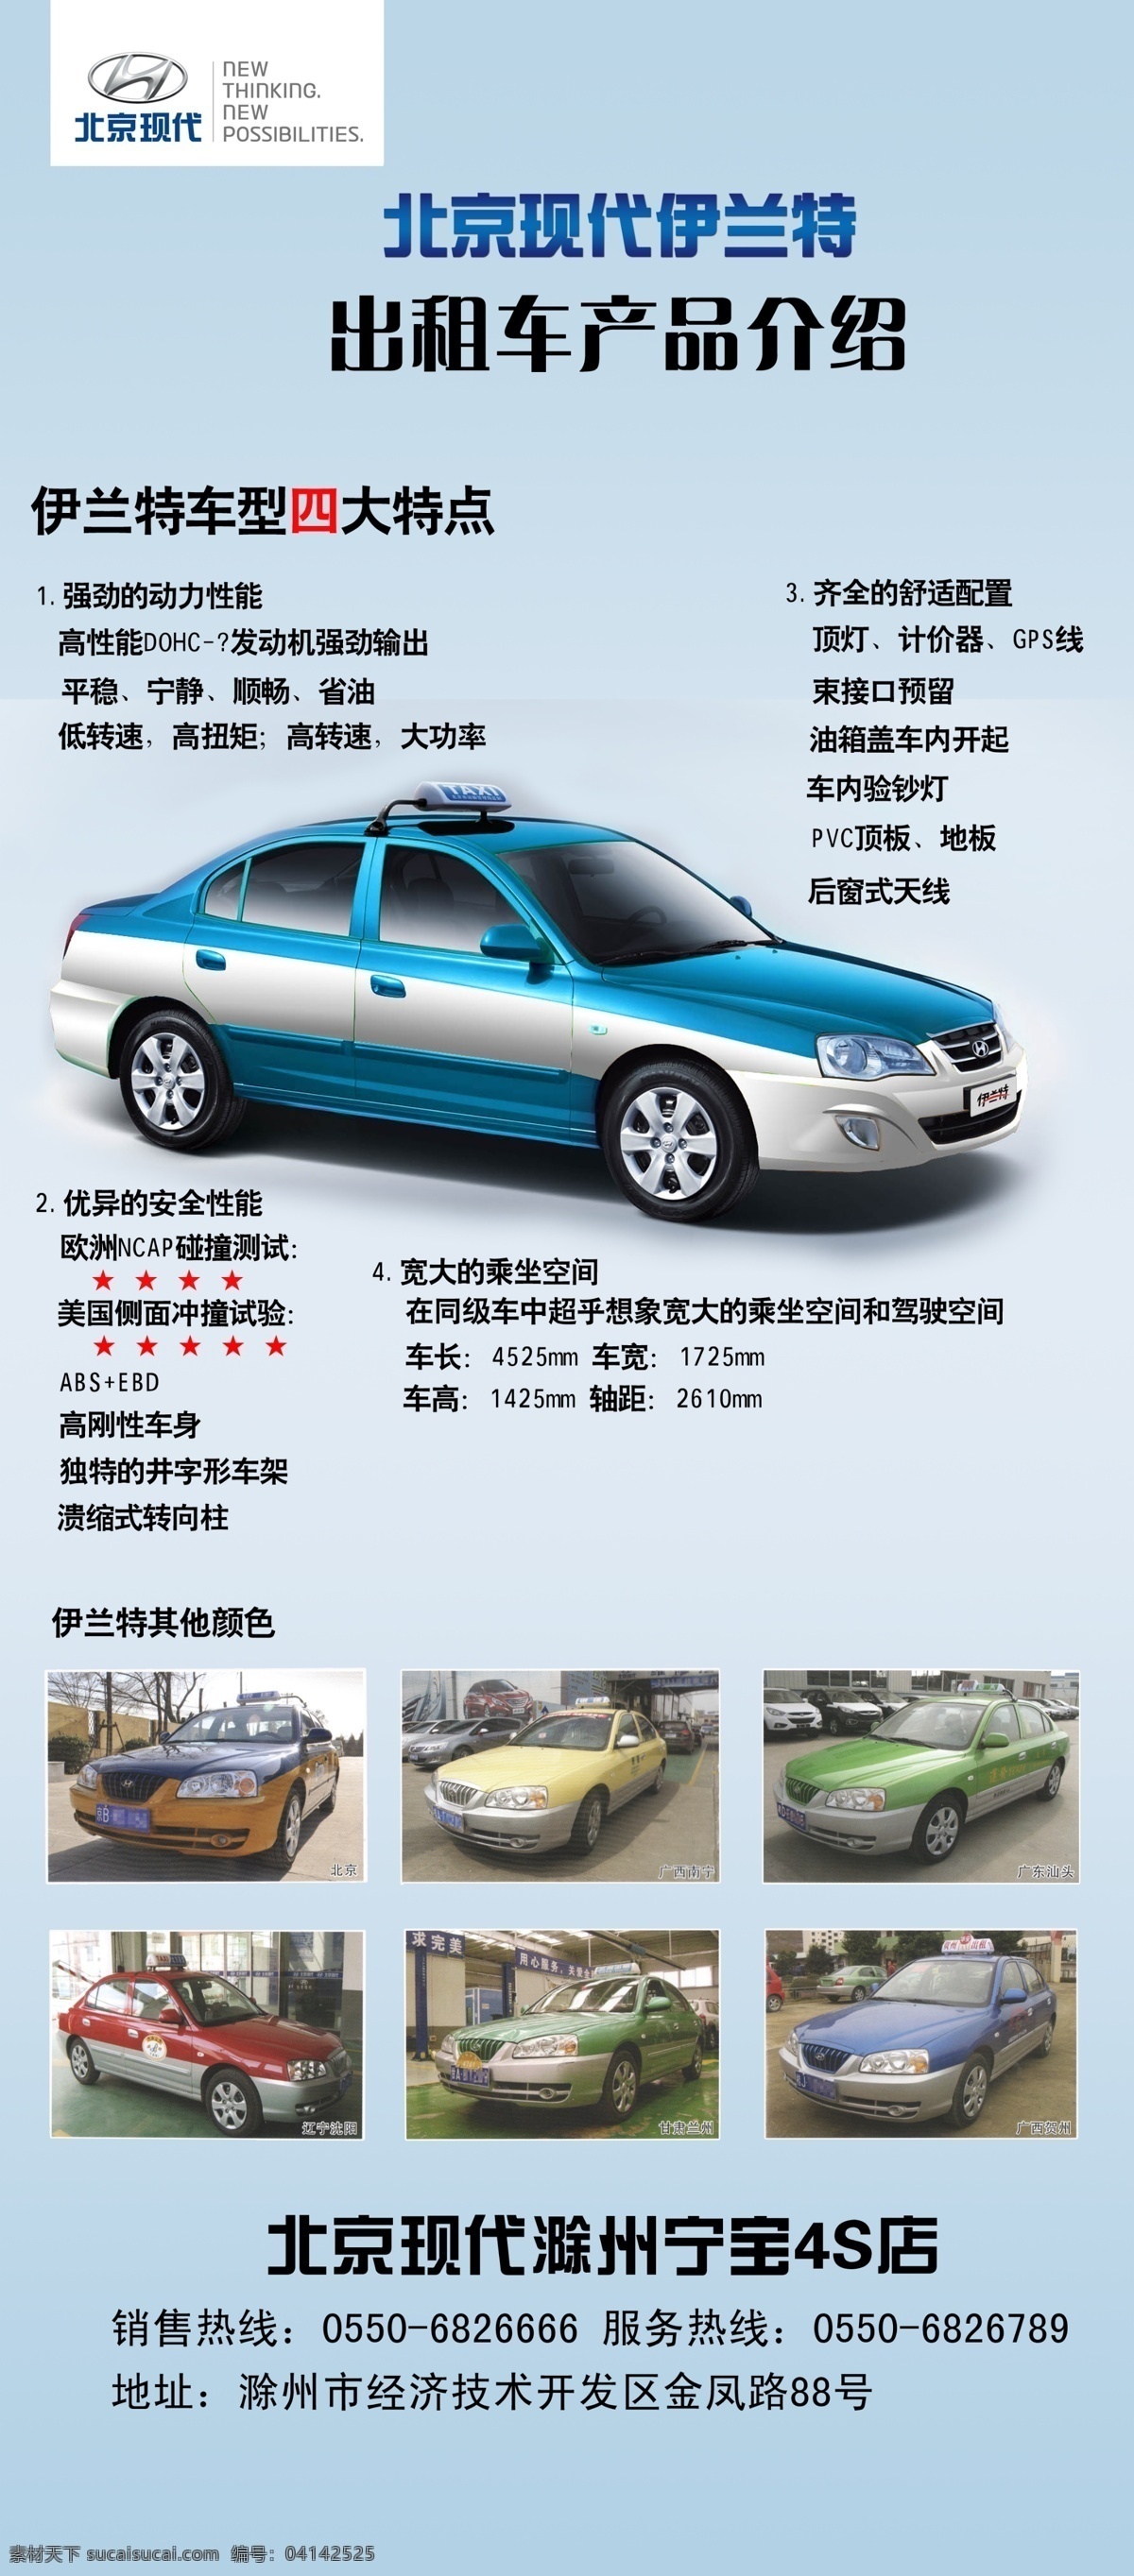 北京现代 出租车 展架 滁州宁宝 伊兰特 源文件 展板模板 广告设计模板